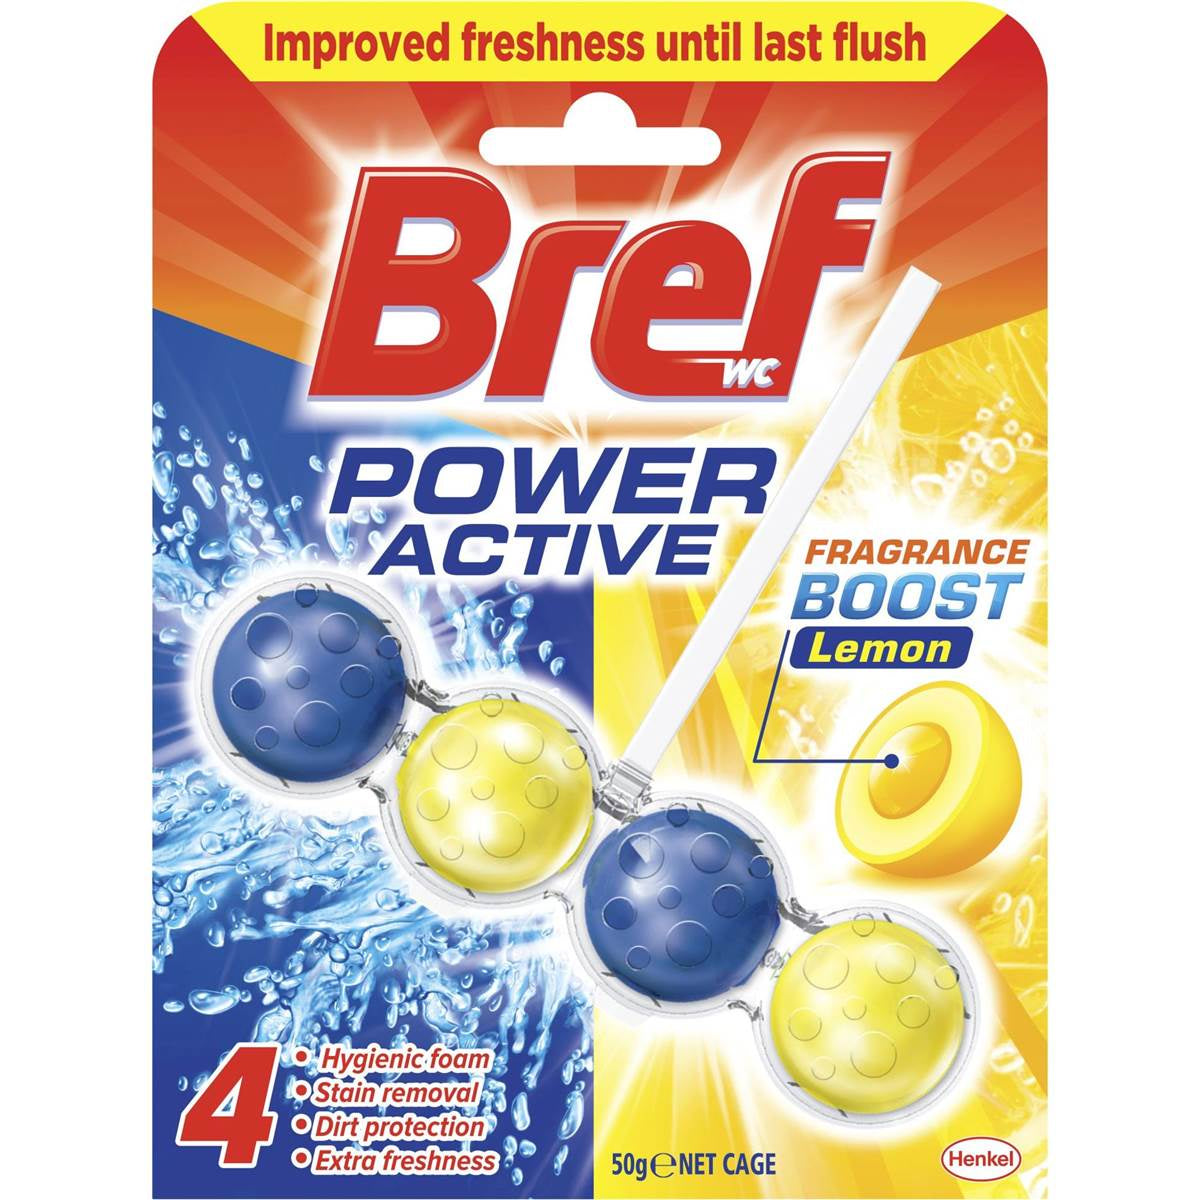 Bref Power Active Lemon Toilet Cleaner 50g